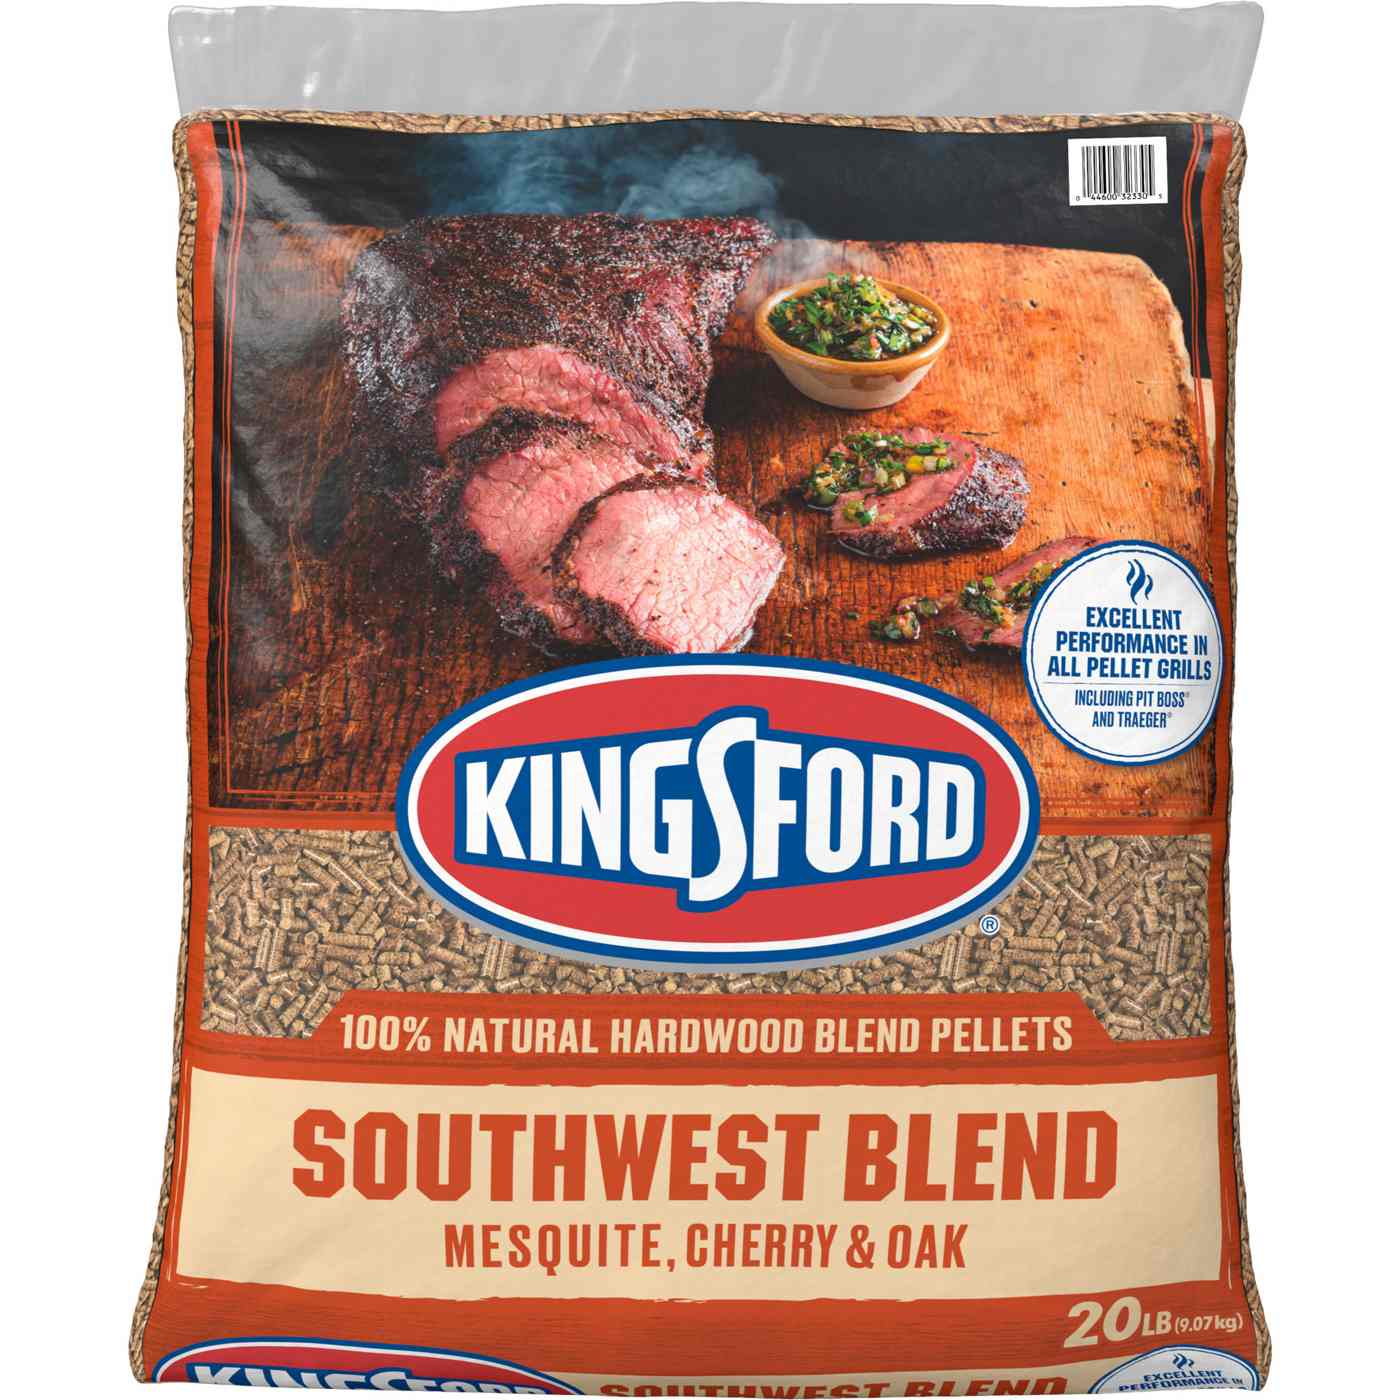 Kingsford 100% Natural Hardwood Blend Pellets, Southwest Blend, Mesquite, Cherry and Oak; image 1 of 5